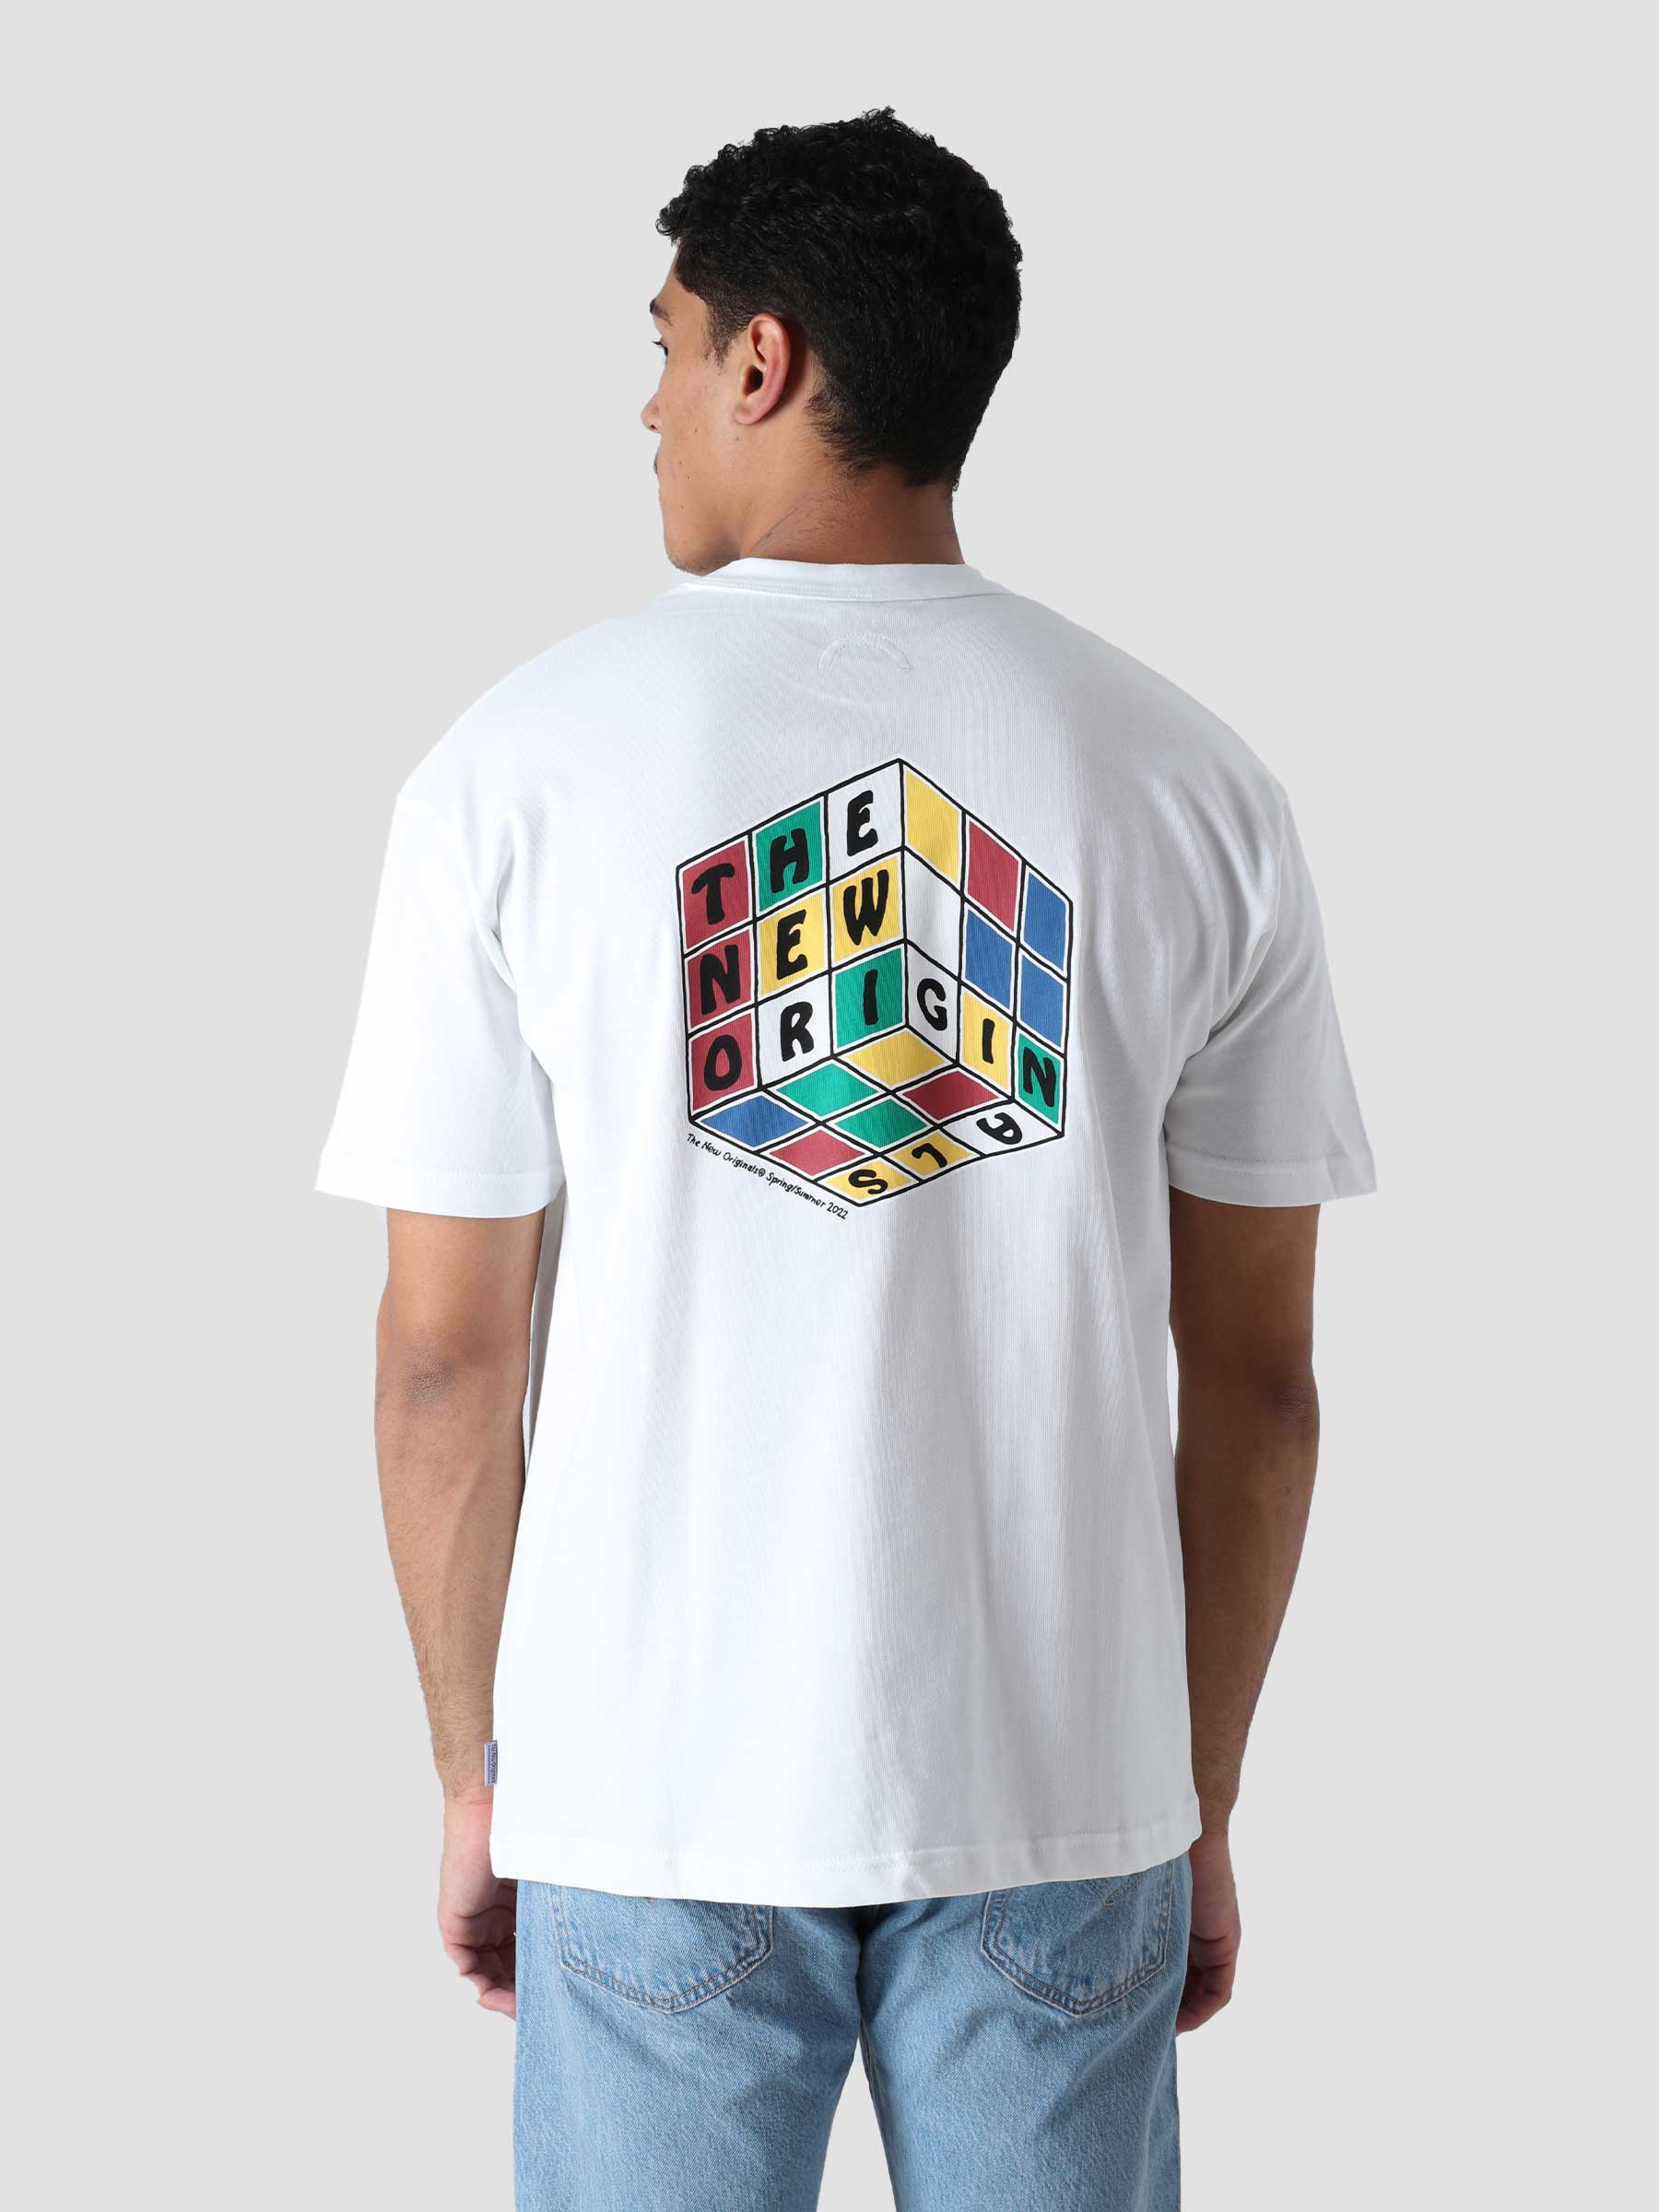 TNO Rubik's T-Shirt White TNO.212.TL.4.100.000